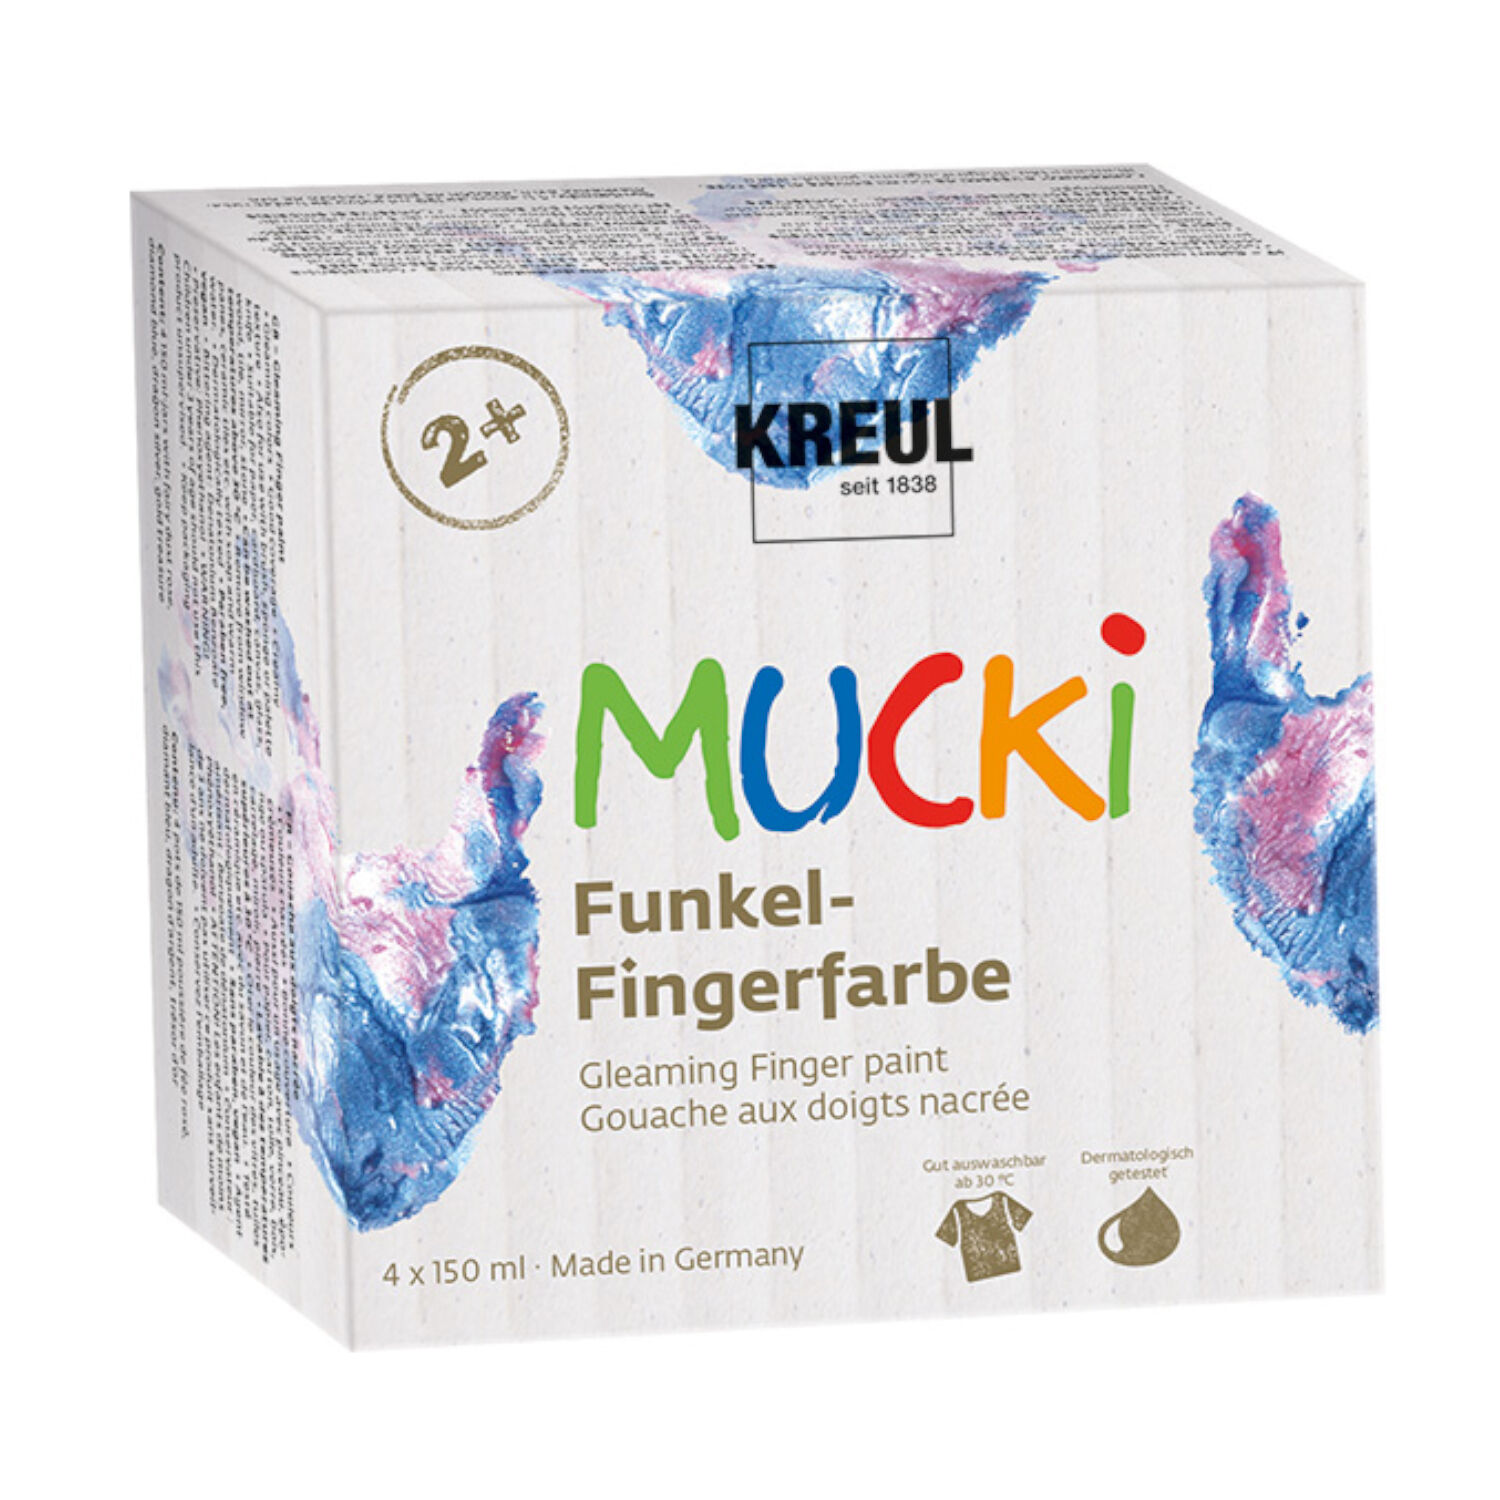 MUCKI Funkel-Fingerfarbe 4er Set 150 ml